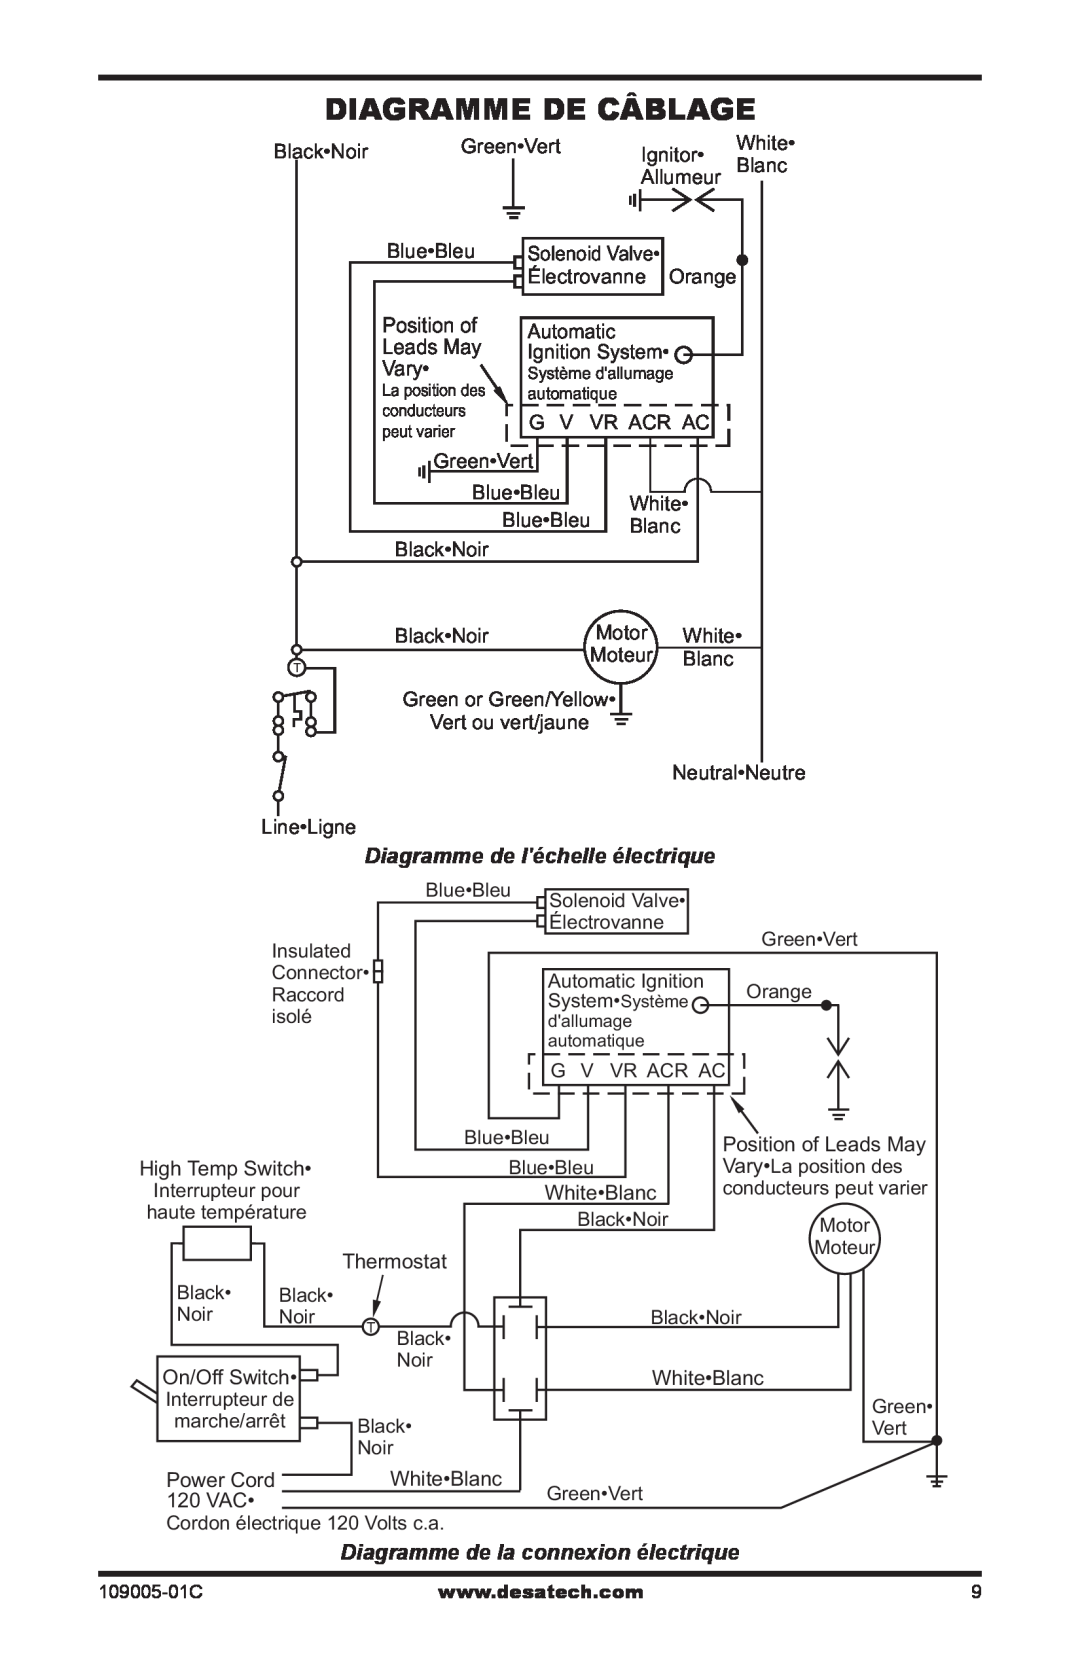 Desa RCLP155AT owner manual Diagramme De Câblage, Diagramme de la connexion électrique, Diagramme de léchelle électrique 